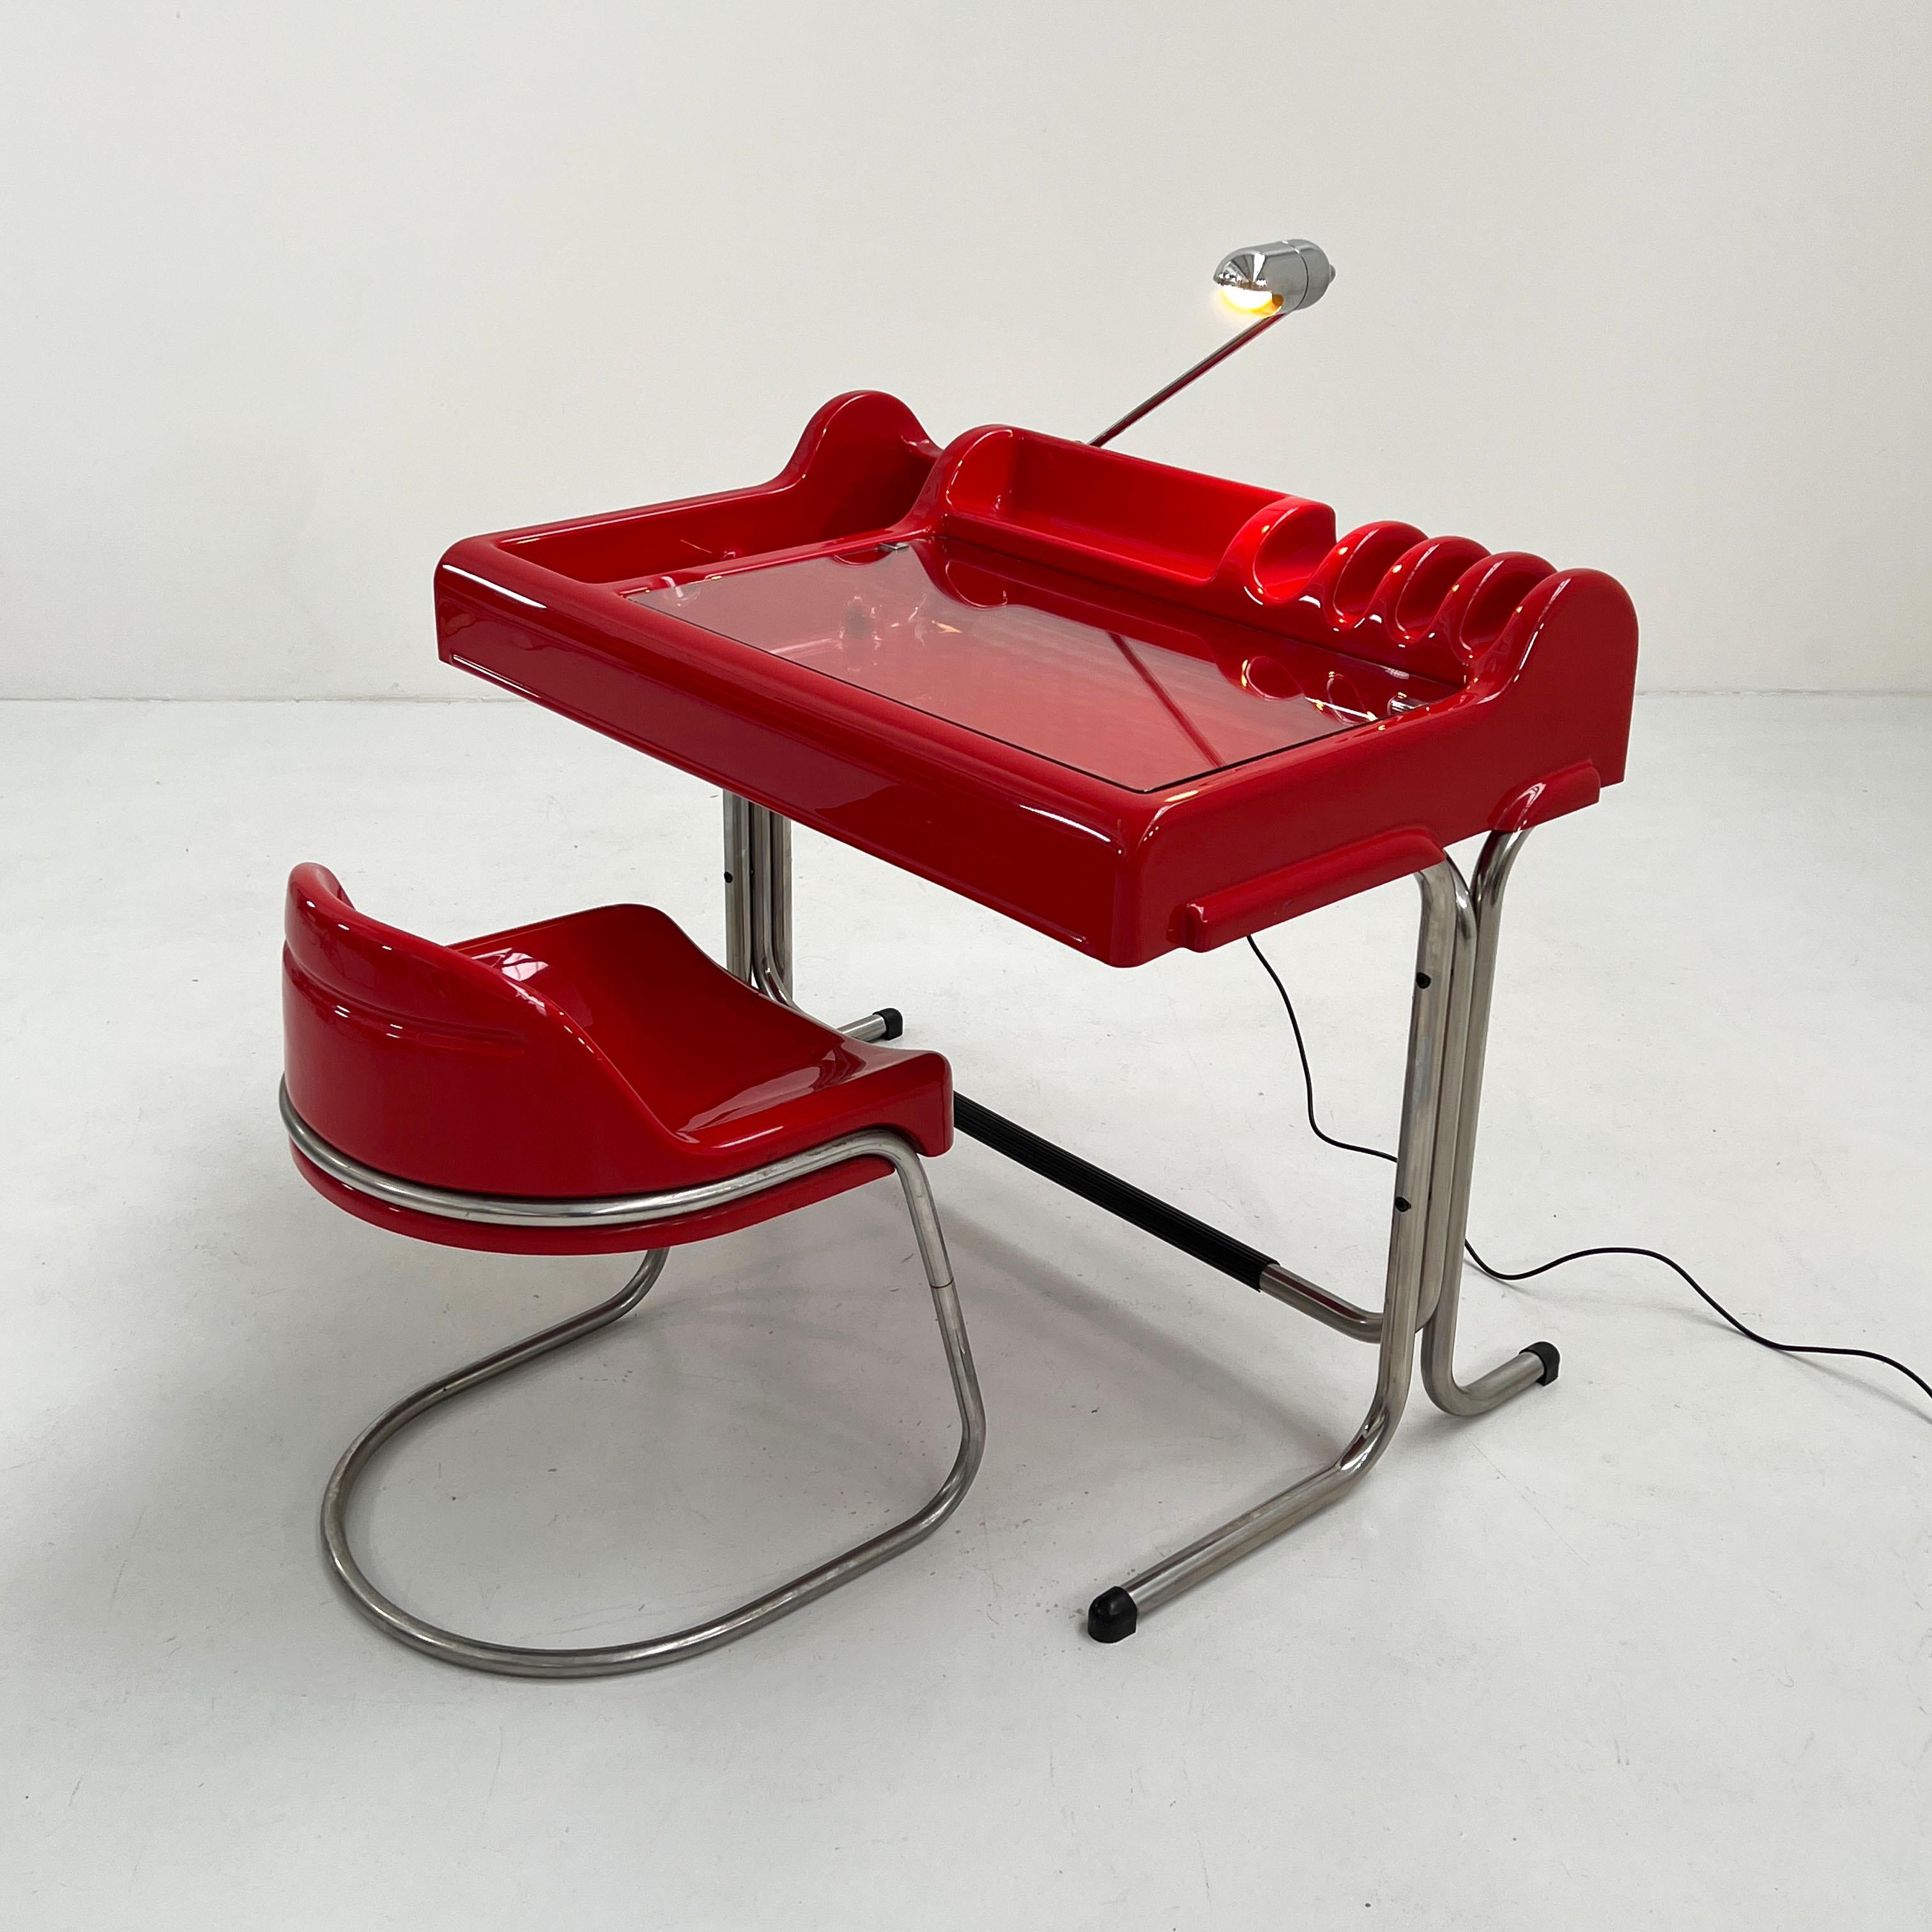 Late 20th Century Red Orix Desk by Vittorio Parigi & Nani Prina for Molteni, 1970s